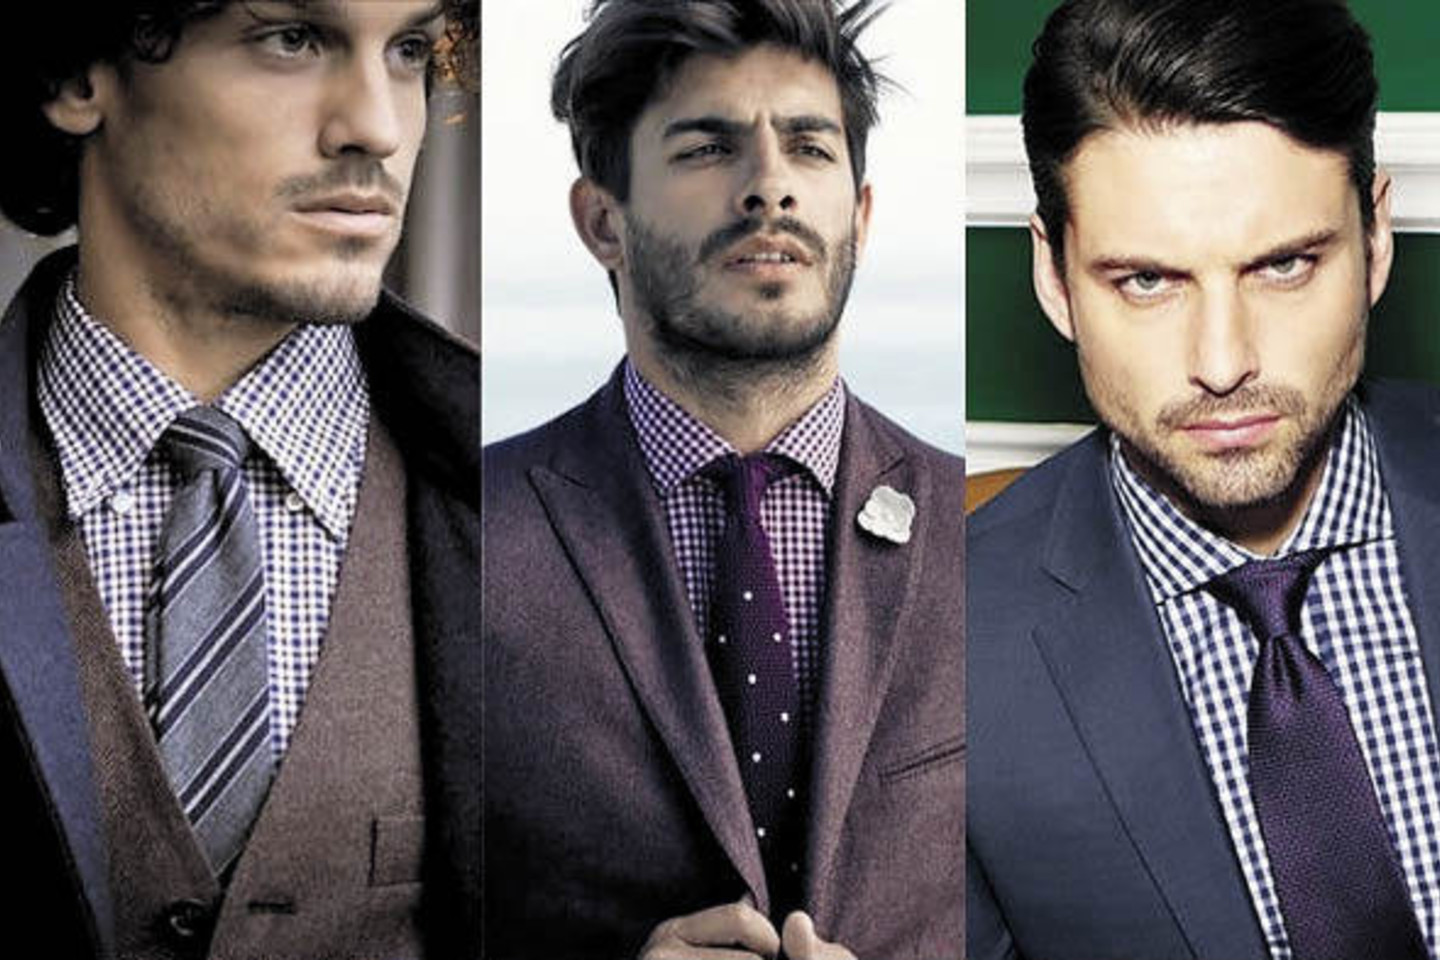 Languotų marškinių ir kaklaraiščio derinimo taisyklė viena: marškinių langeliai visuomet turi būti smulkesni nei kaklaraiščio.